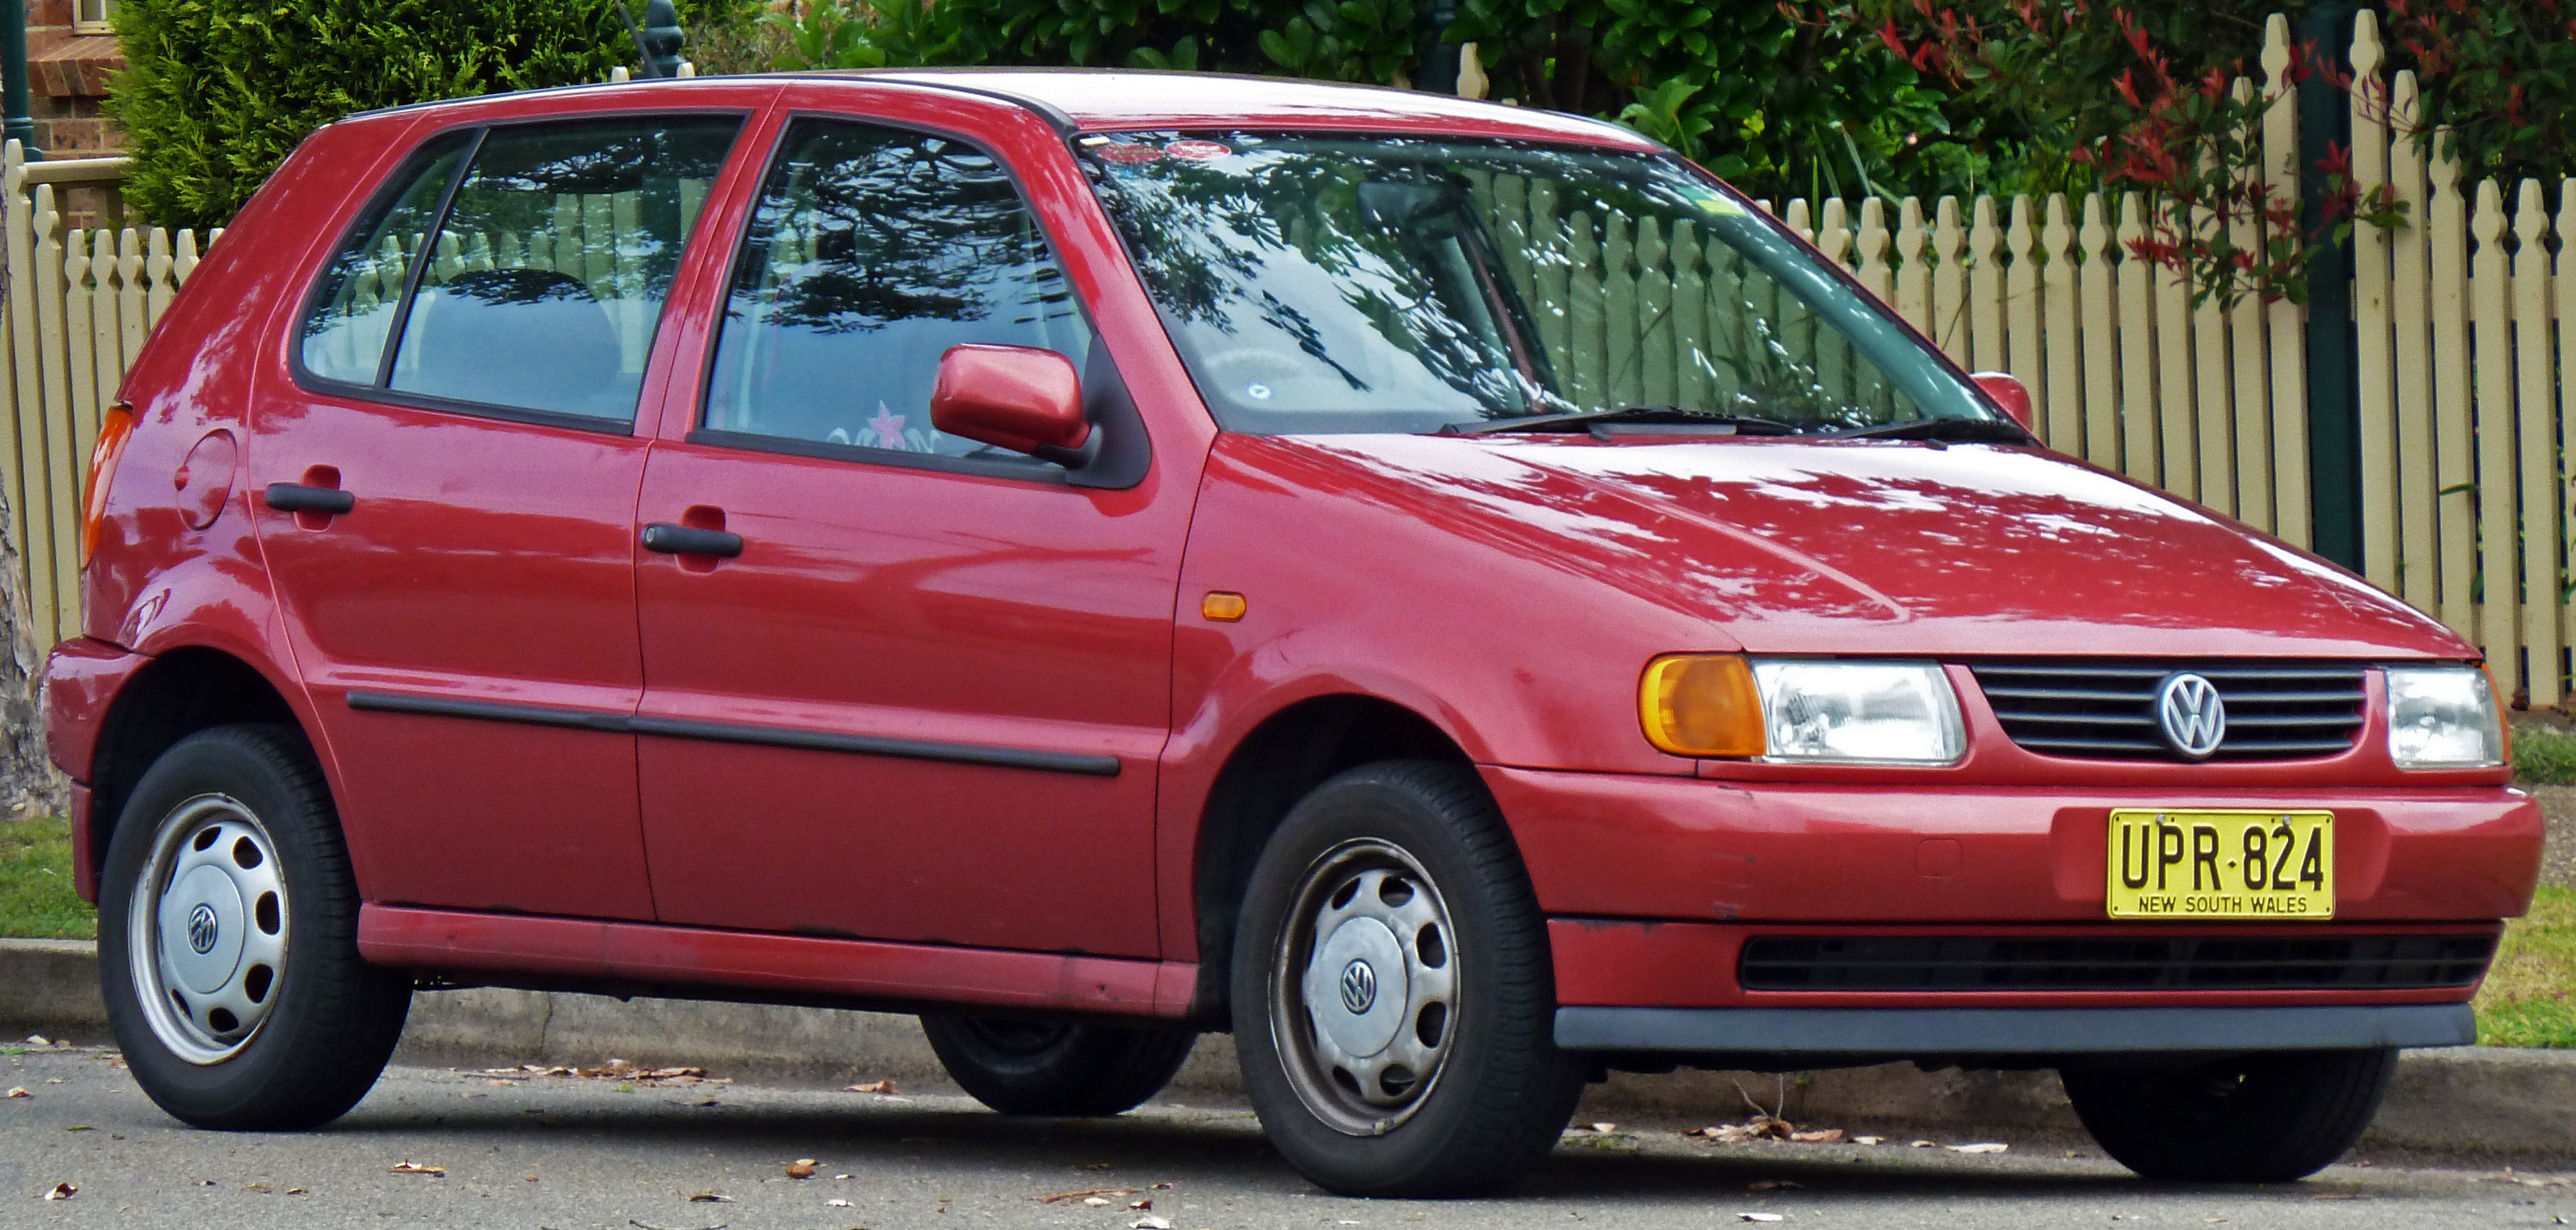 File:1997 Volkswagen Polo (6N) 5-door hatchback (2010-09-23).jpg ...